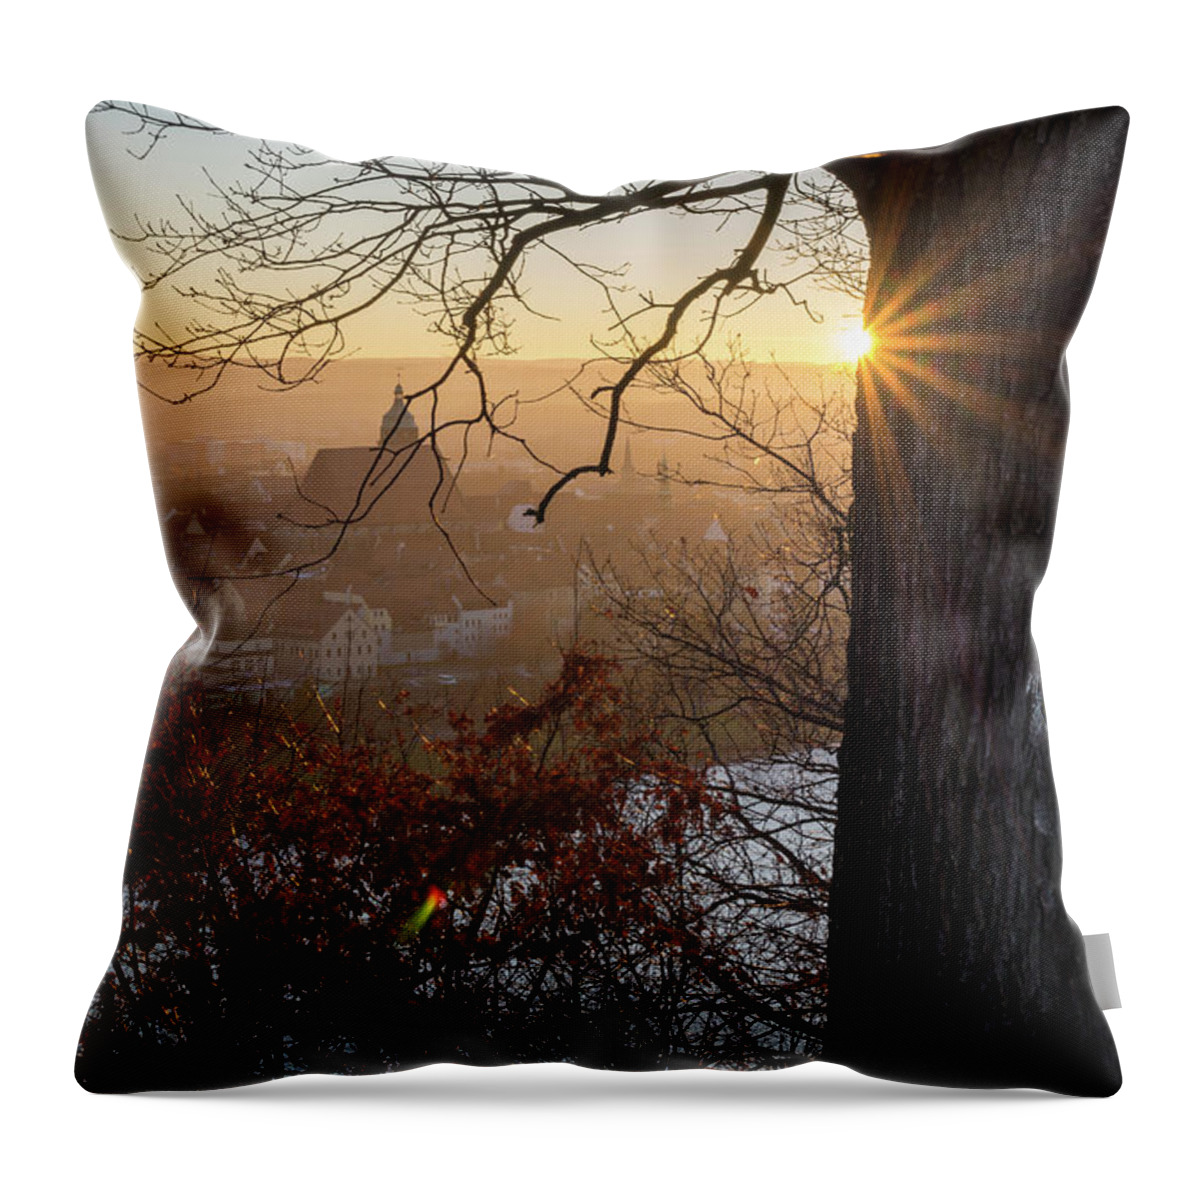 Sunset Throw Pillow featuring the photograph Golden evening light 2 by Adriana Mueller